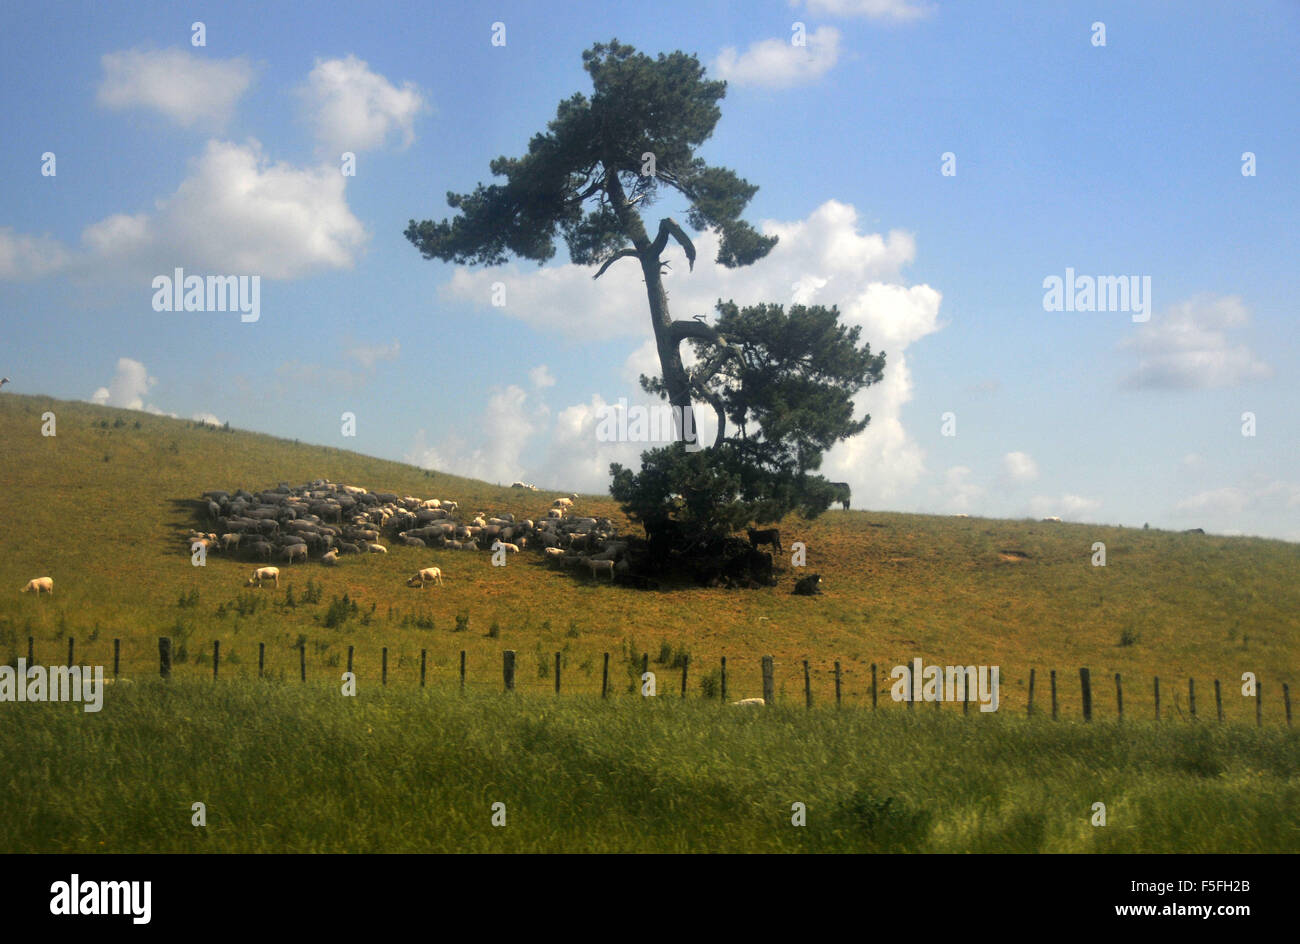 Ovejas buscan protección de sombra bajo el árbol cerca de Hobbiton movie set, Matamata, Isla del Norte, Nueva Zelanda Foto de stock